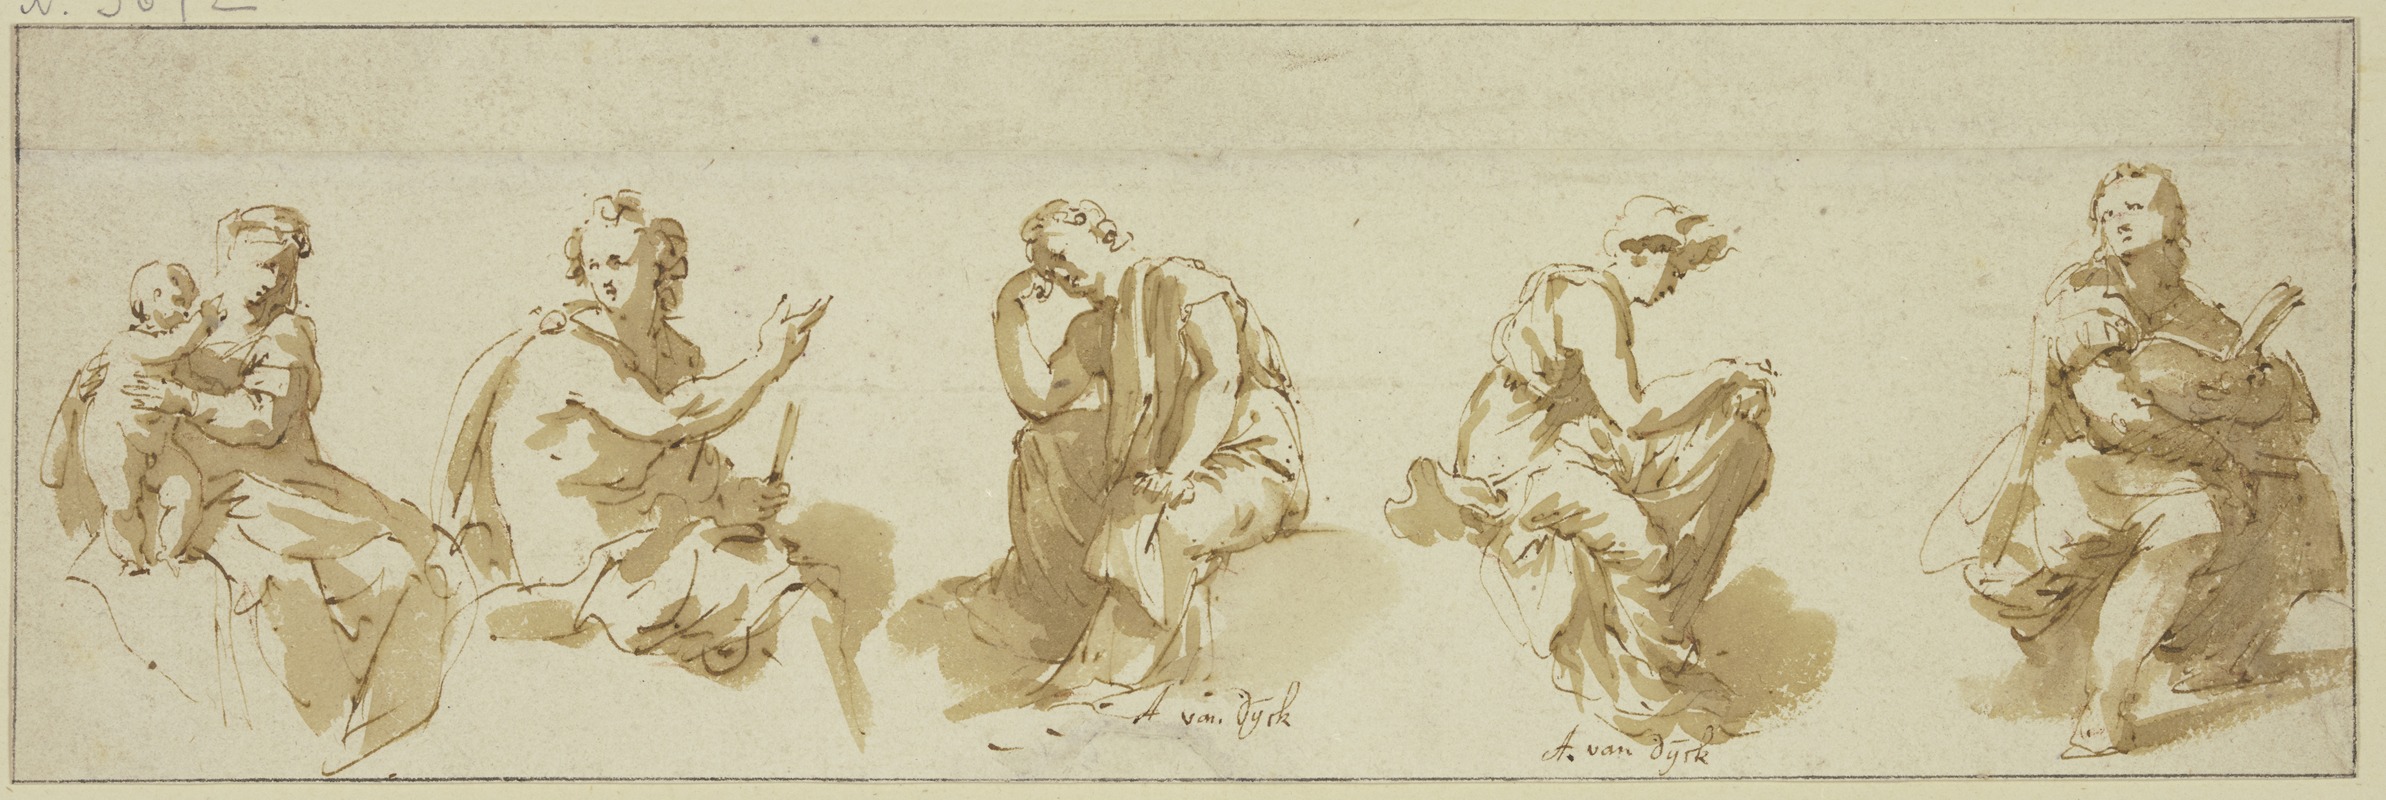 Jan de Bisschop - Fünf sitzende allegorische Figuren